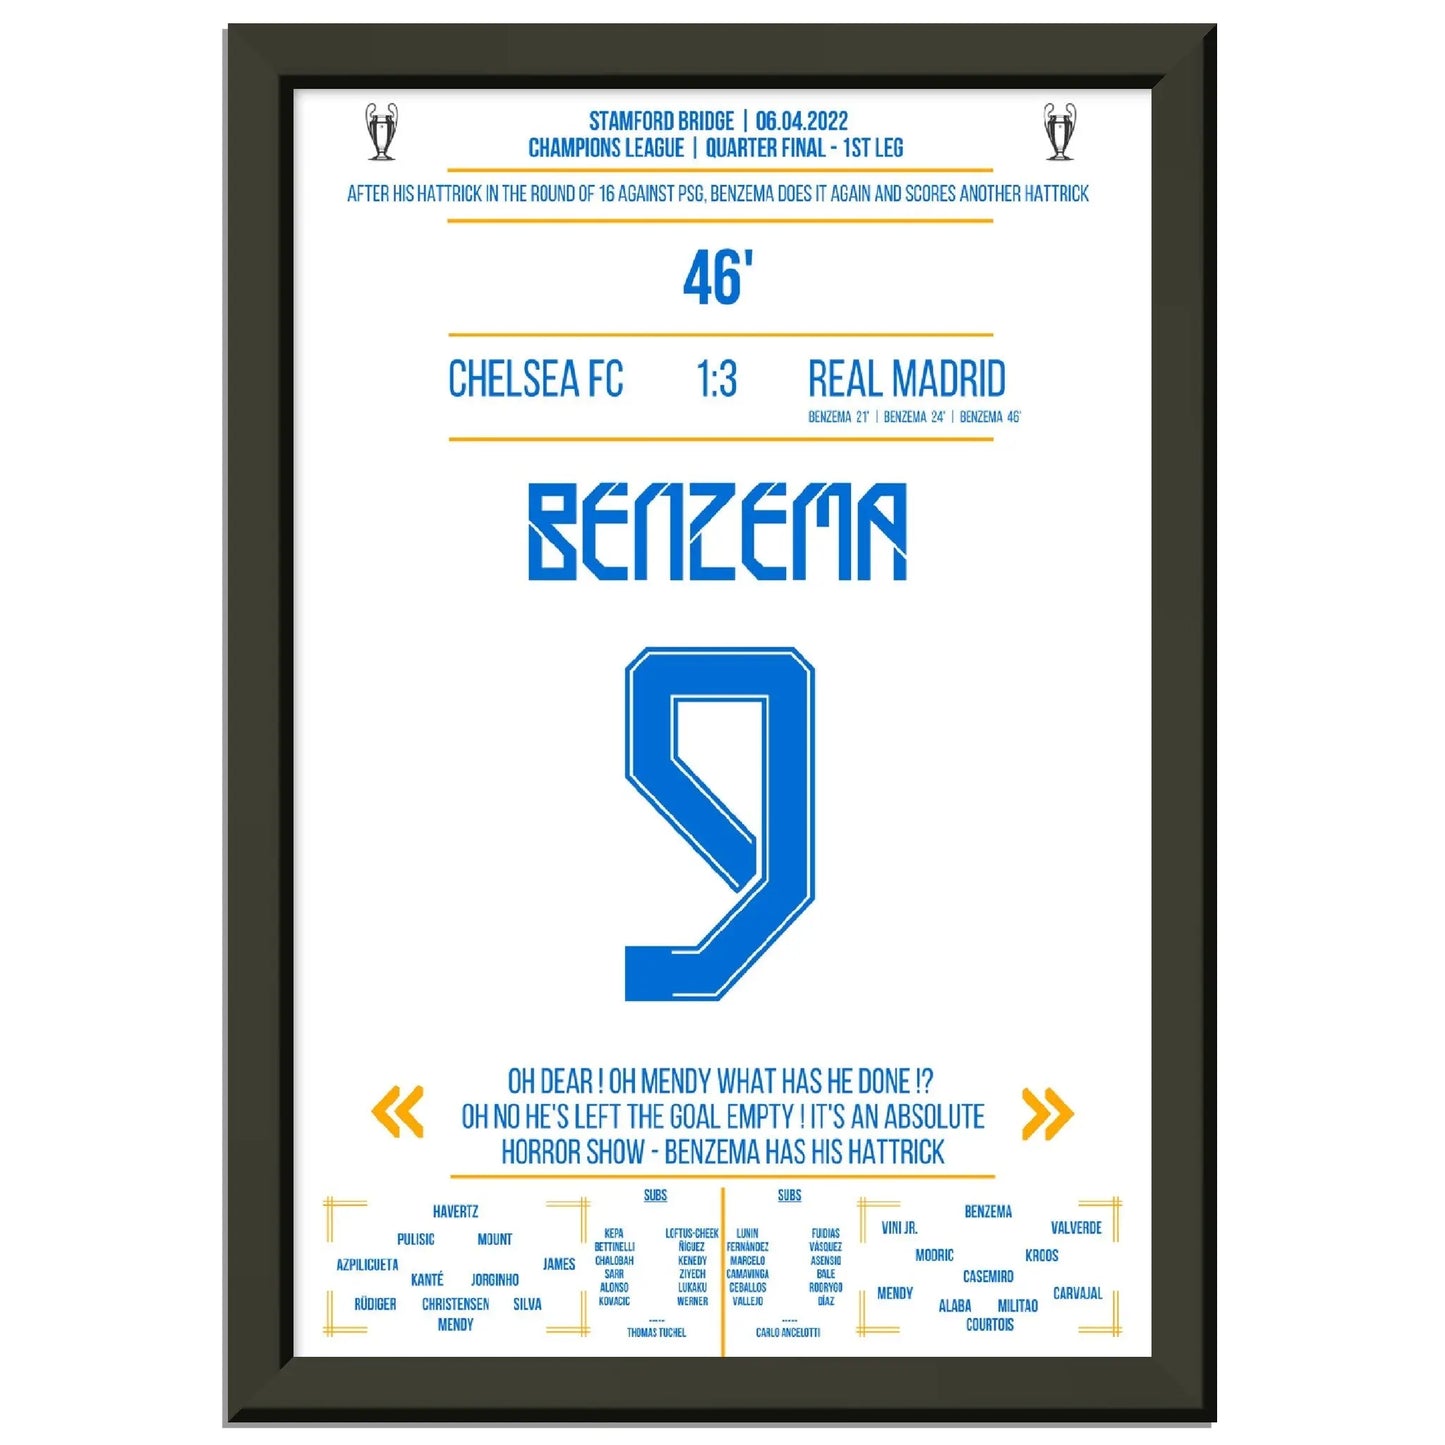 Nächste Runde - Nächster hattrick! Benzema bezwingt Chelsea im Alleingang 